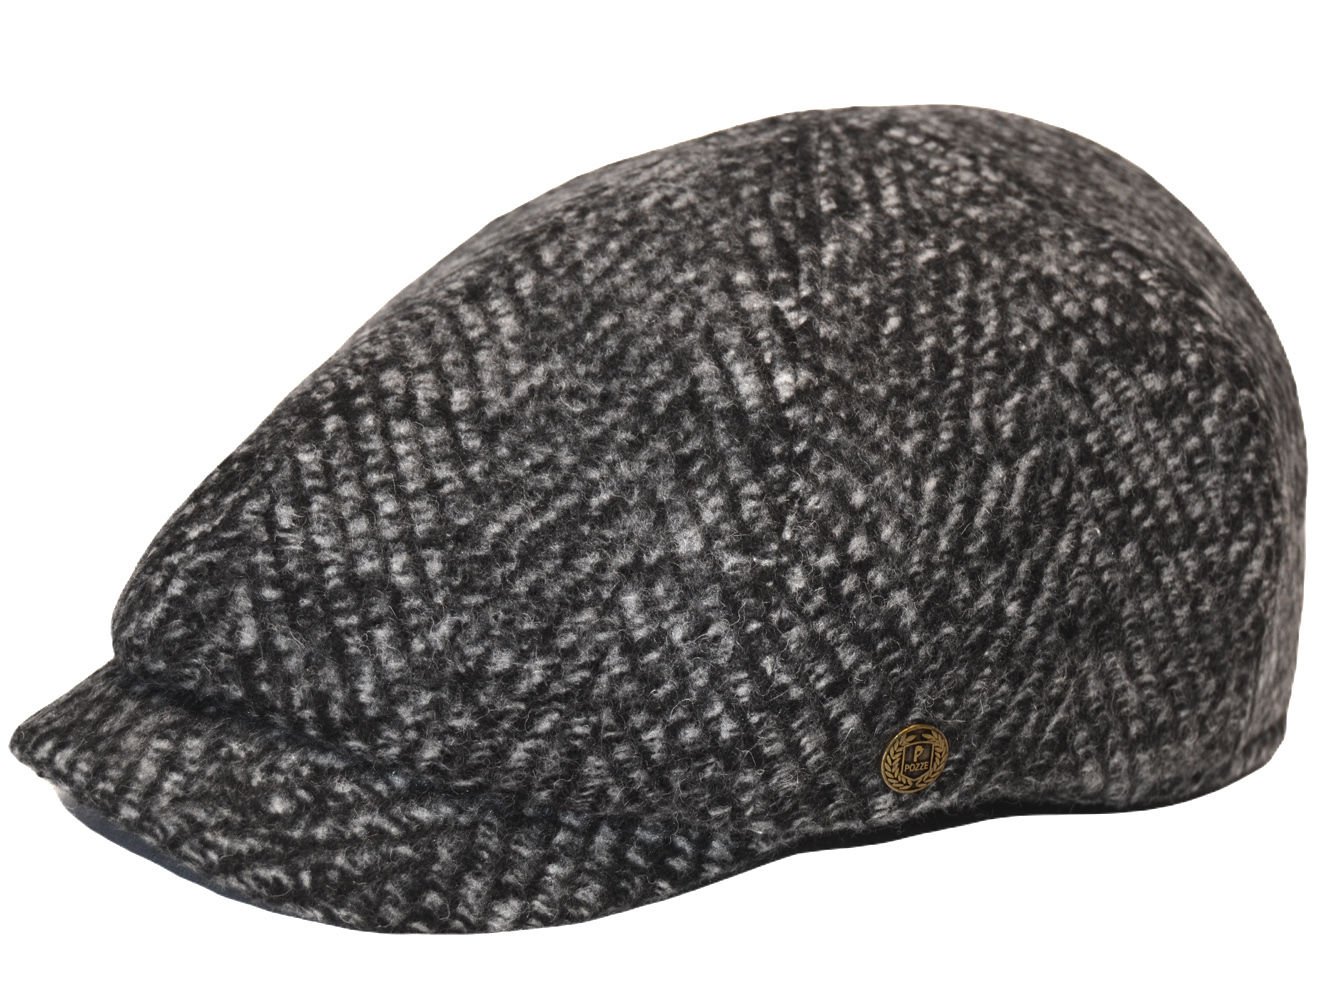 Pozze 6 Parçalı İngiliz Stil Kışlık Erkek Kasket Şapka